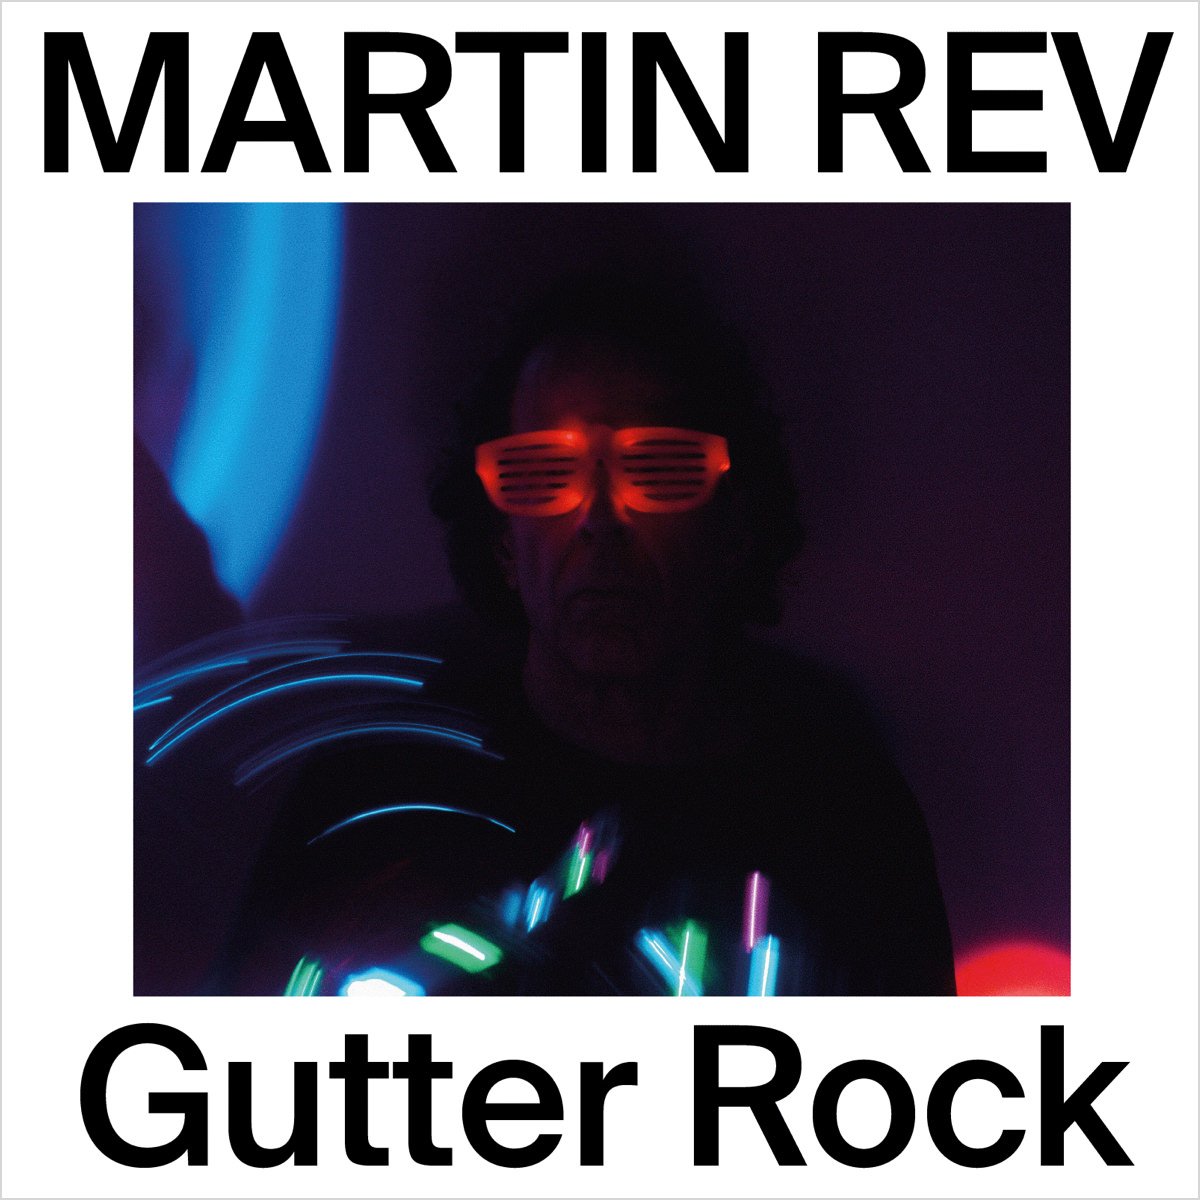 Martin Rev “Gutter Rock“ — PB021 — Porridge Bullet